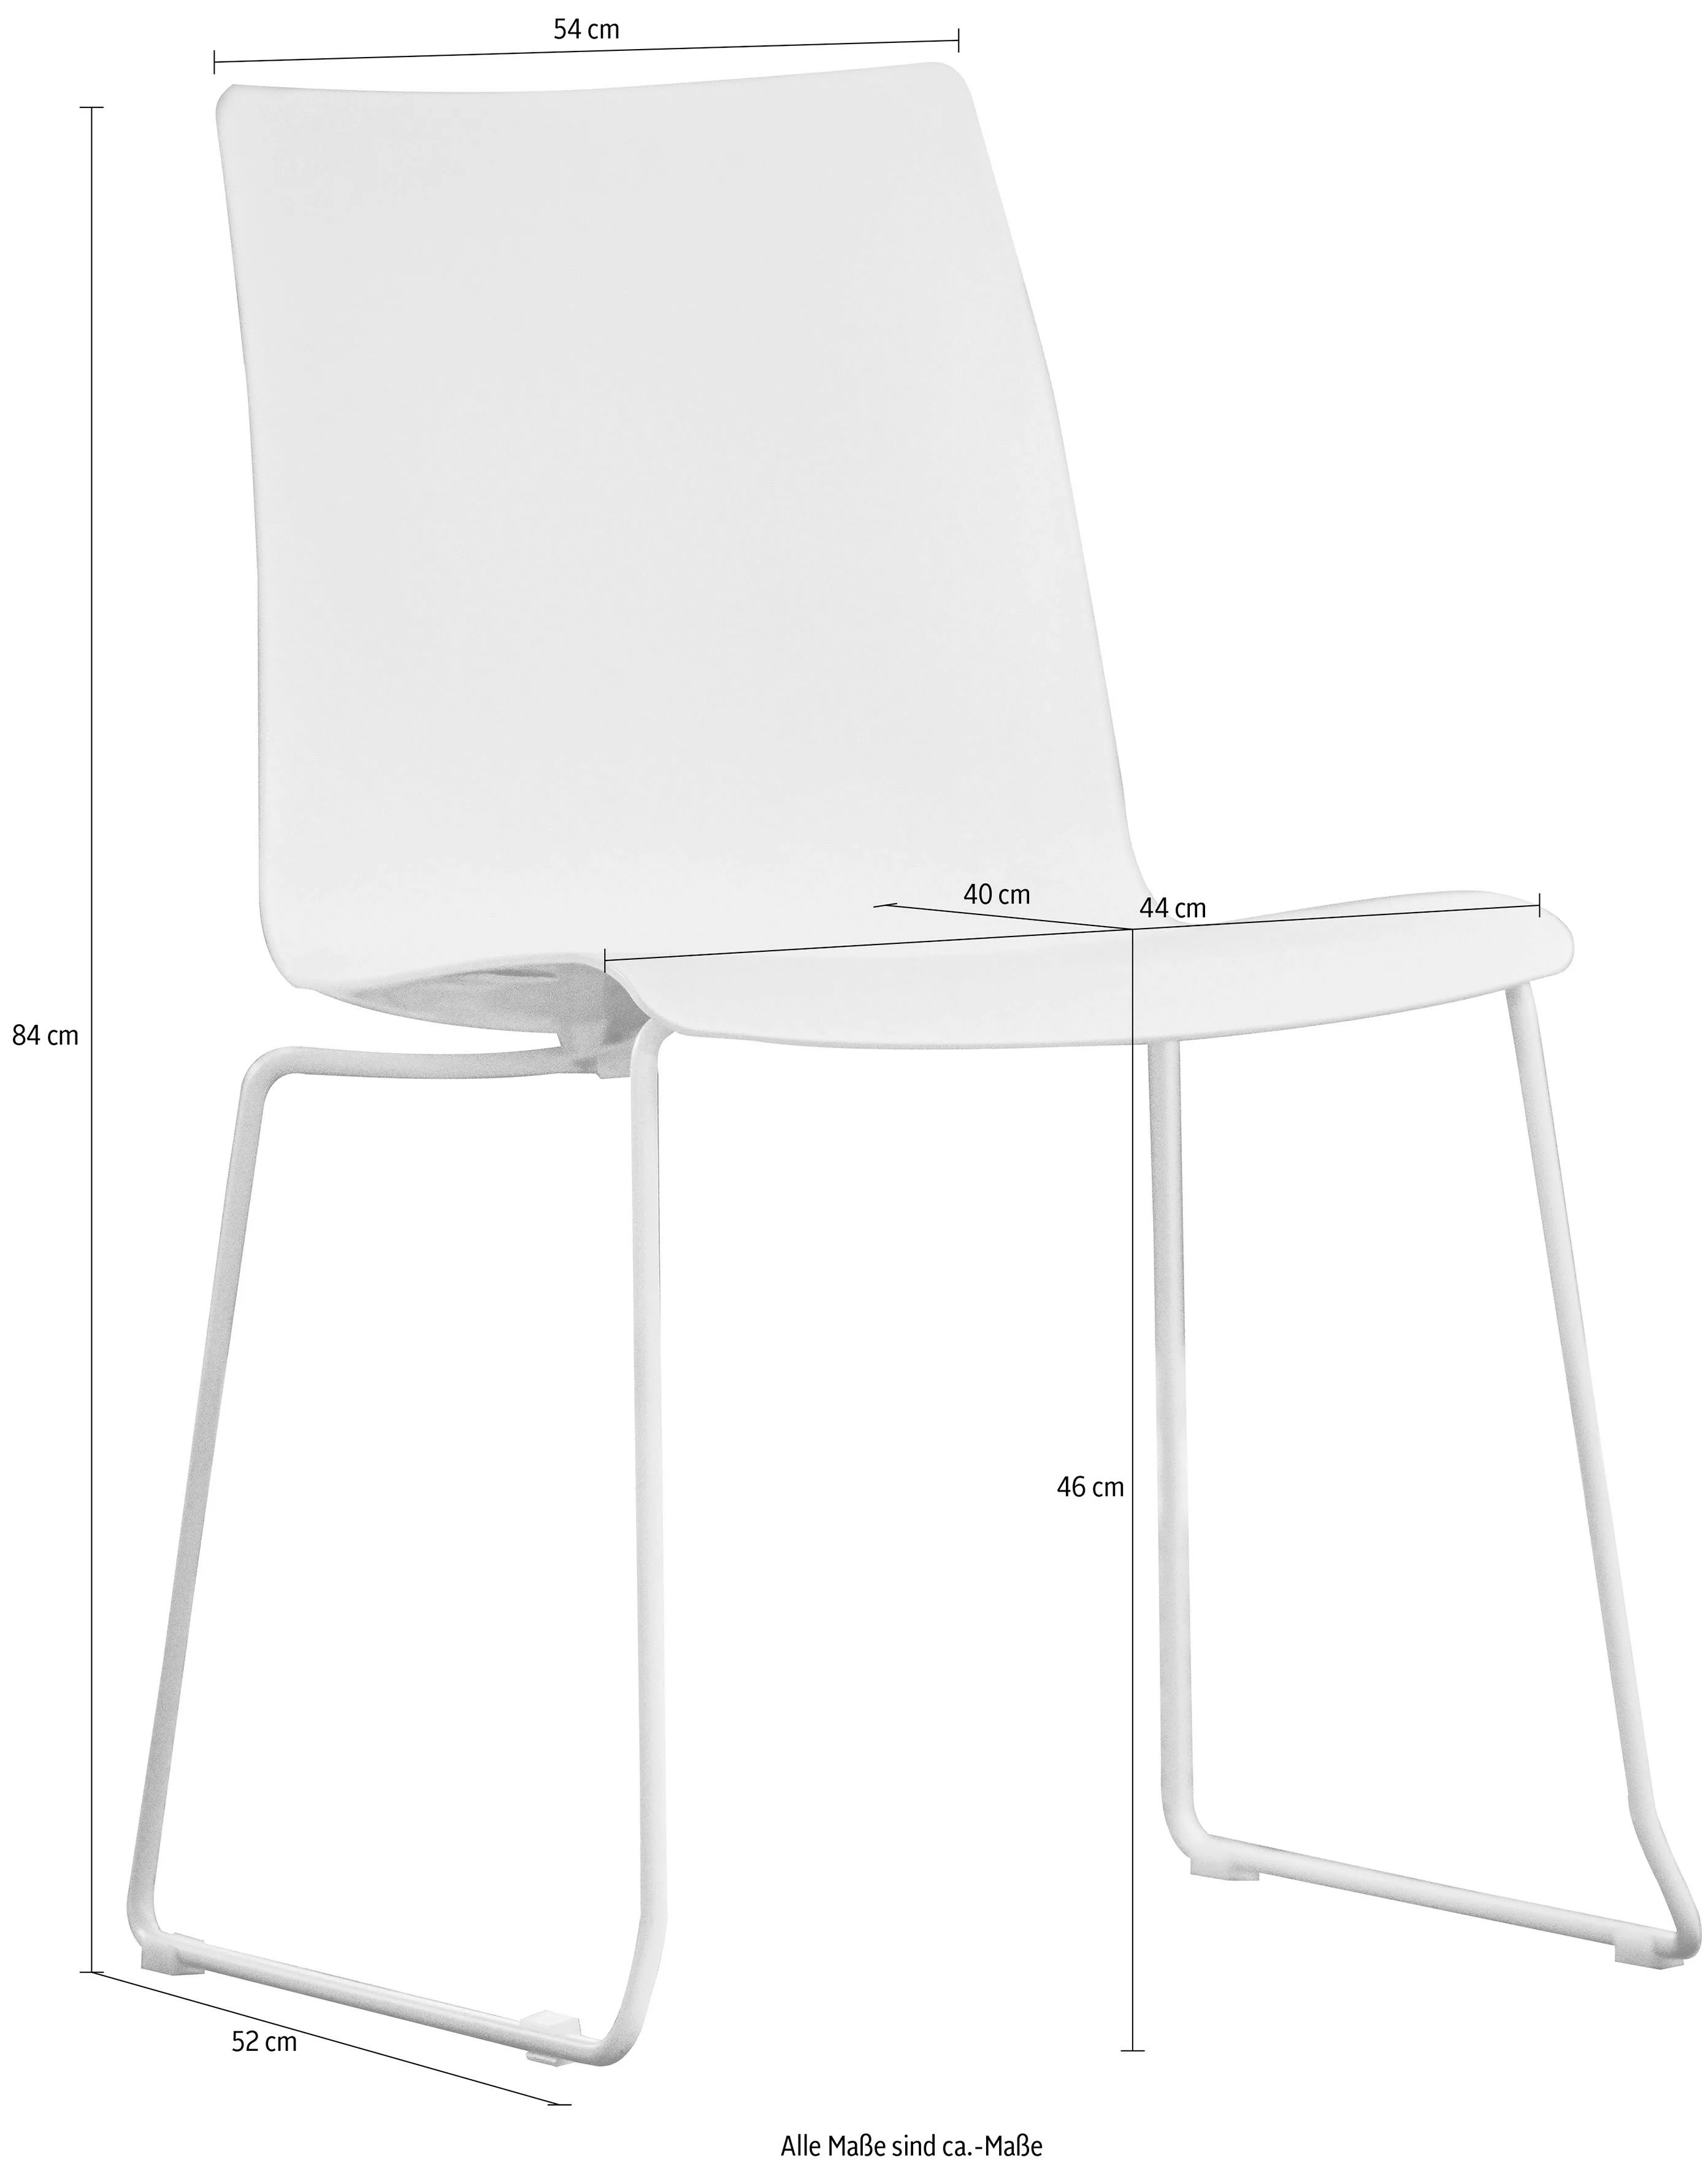 jankurtz Stuhl "slide", Sitzschale aus Kunsstoff, stapelbar, in 3 Farben günstig online kaufen